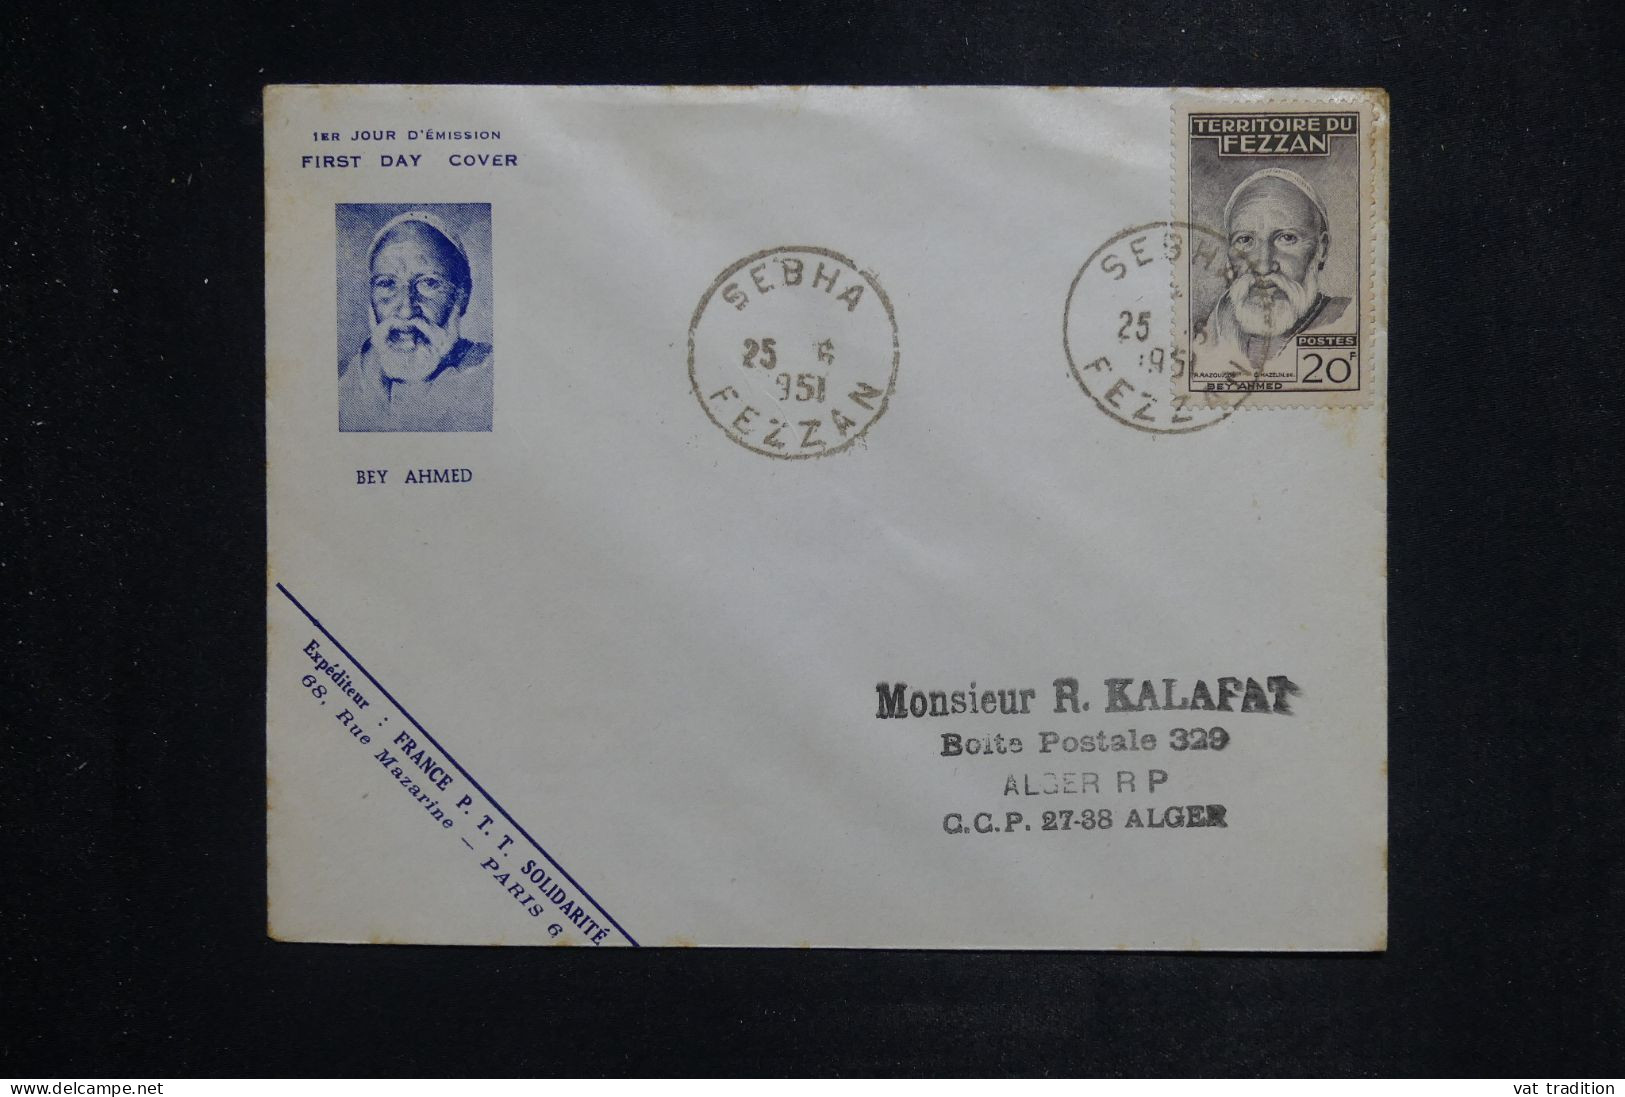 FEZZAN  - Enveloppe FDC En 1951 - Beyahmed - L 151104 - Covers & Documents